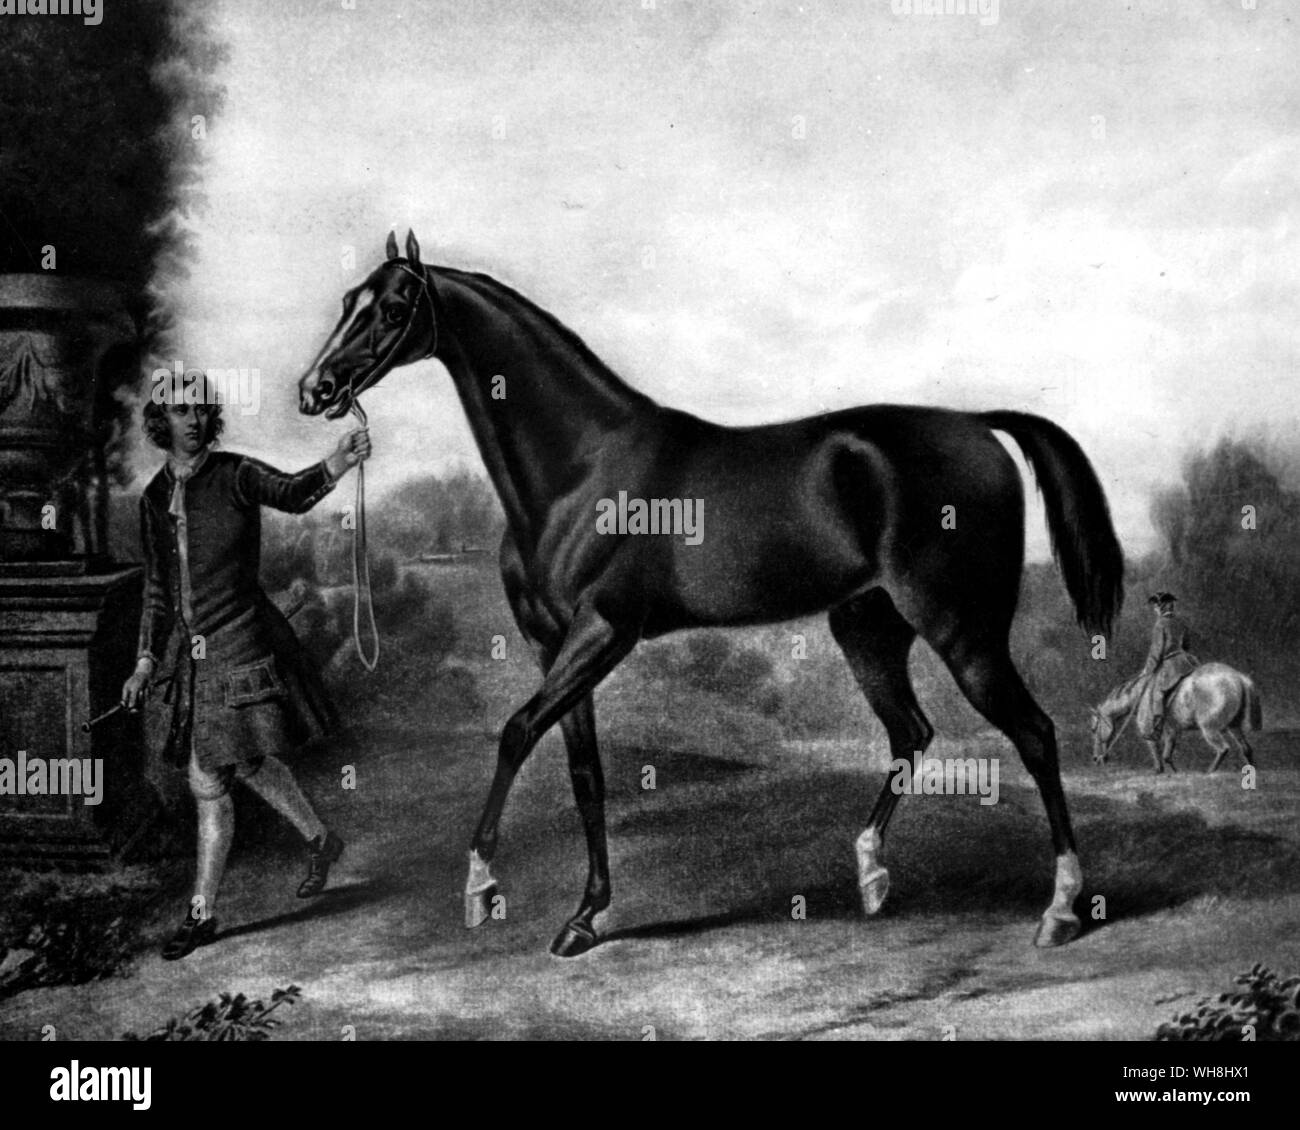 Il Darley Arabian. Questo cavallo era foaled nel 1700. aveva circa 20 anni più giovane di Byerley. Egli è stato comprato da Thomas Darley di Aleppo nel 1704, che lo ha inviato a suo fratello Richard a Aldby, Yorkshire. Egli si è levato in piedi là fino al 1730, ultimamente di proprietà di John Brewster Darley. Uno dei suoi figli era Bulle Rock, il primo purosangue per andare in America. Altri sono stati i due Childers, uno dei primi grandi purosangue ai cavalli da corsa e l'altra il progenitore, da Eclipse, oggi dalla maggior parte delle purosangue (vedere pagg. 78-80). Thoroughbred ai cavalli da corsa sono discesi da stalloni arabi.. La storia del cavallo Foto Stock